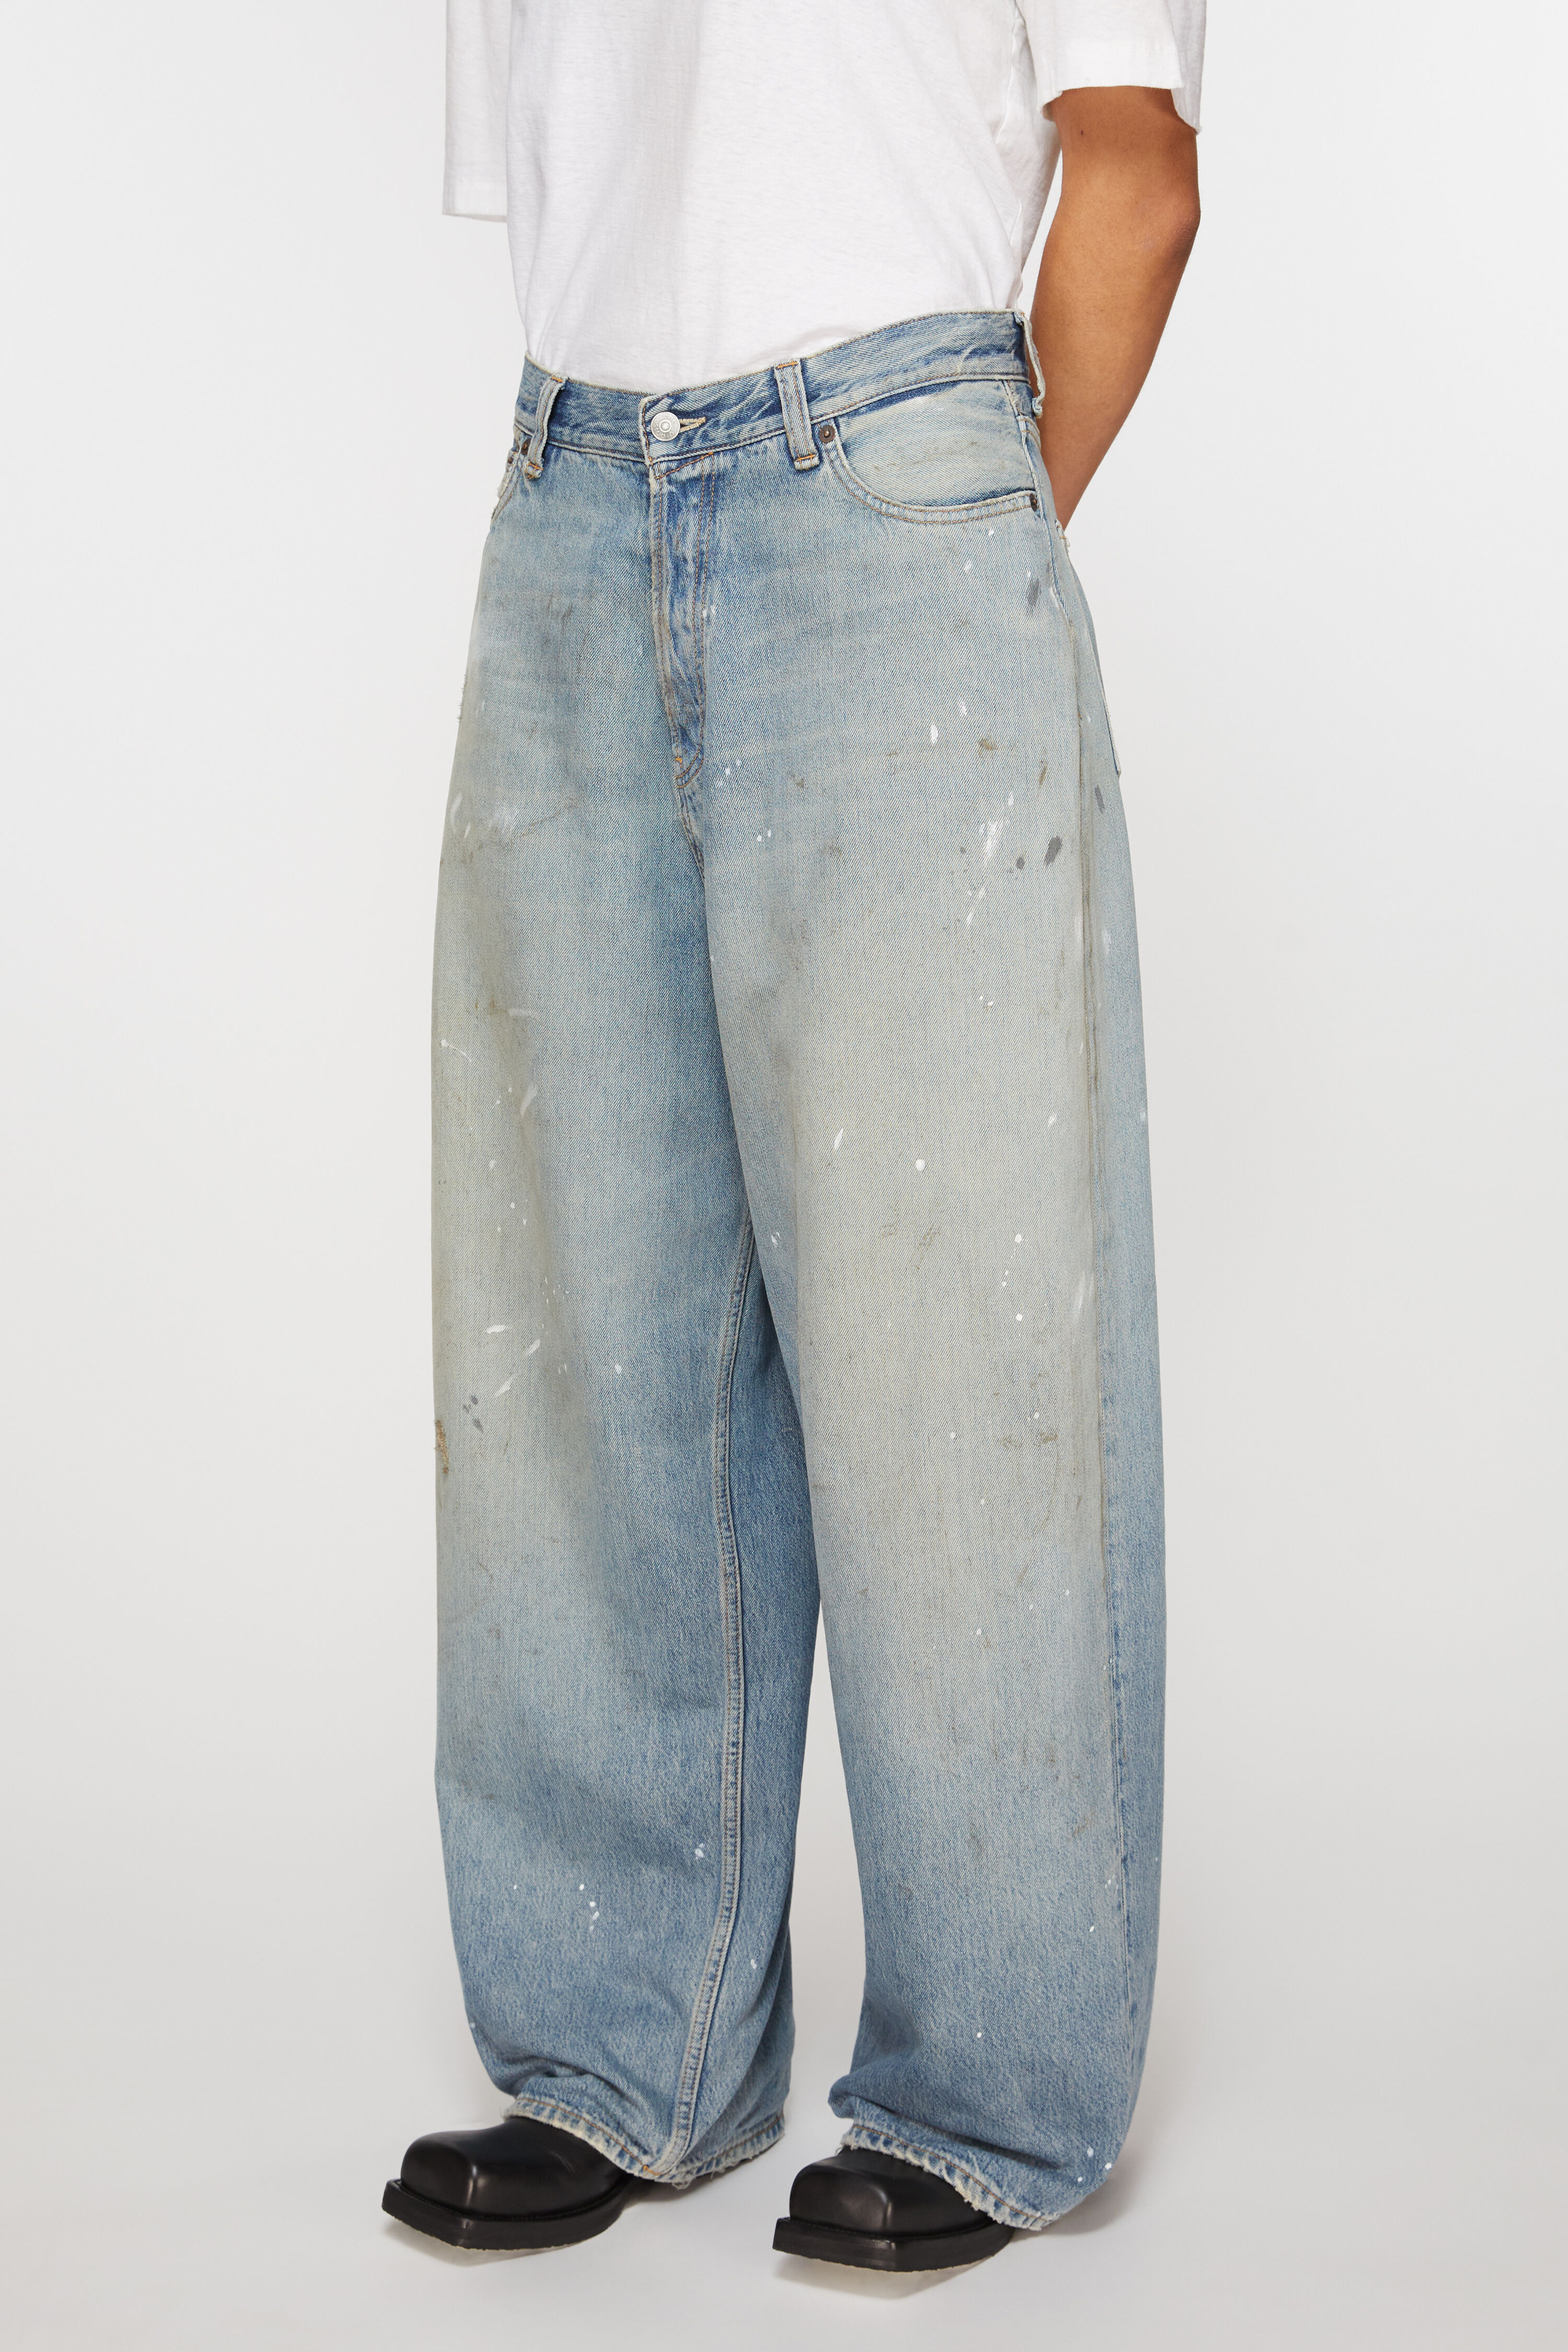 Acne Studios - Super baggy fit jeans - 2023F - Light blue